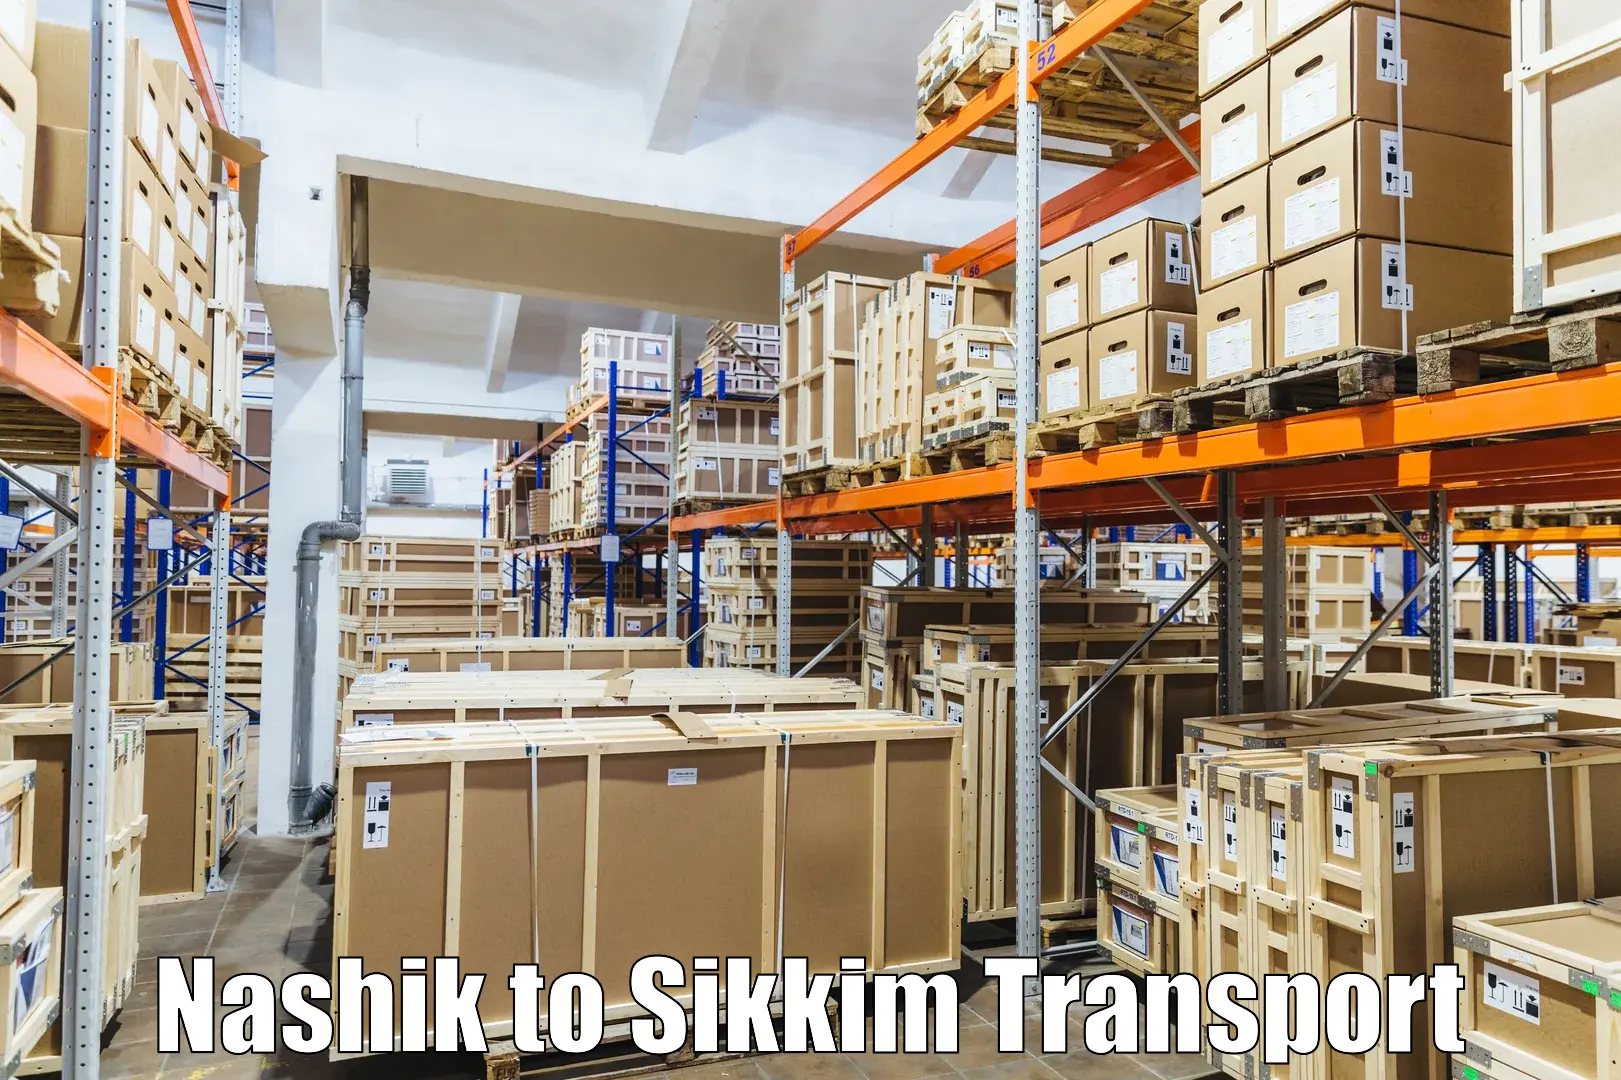 Daily parcel service transport Nashik to Gangtok